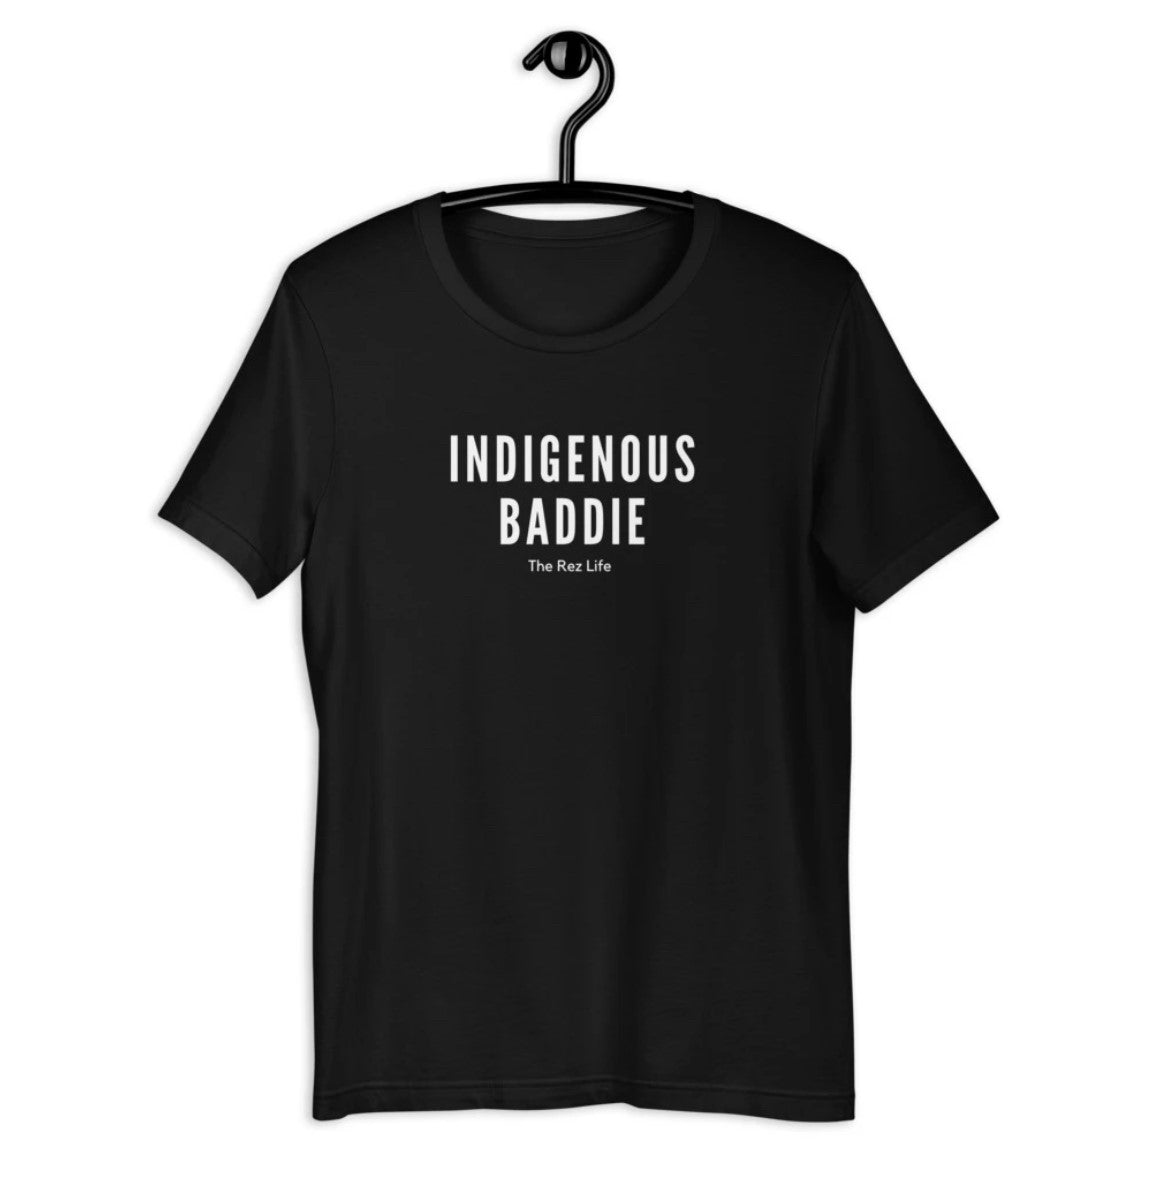 Indigenous Baddie